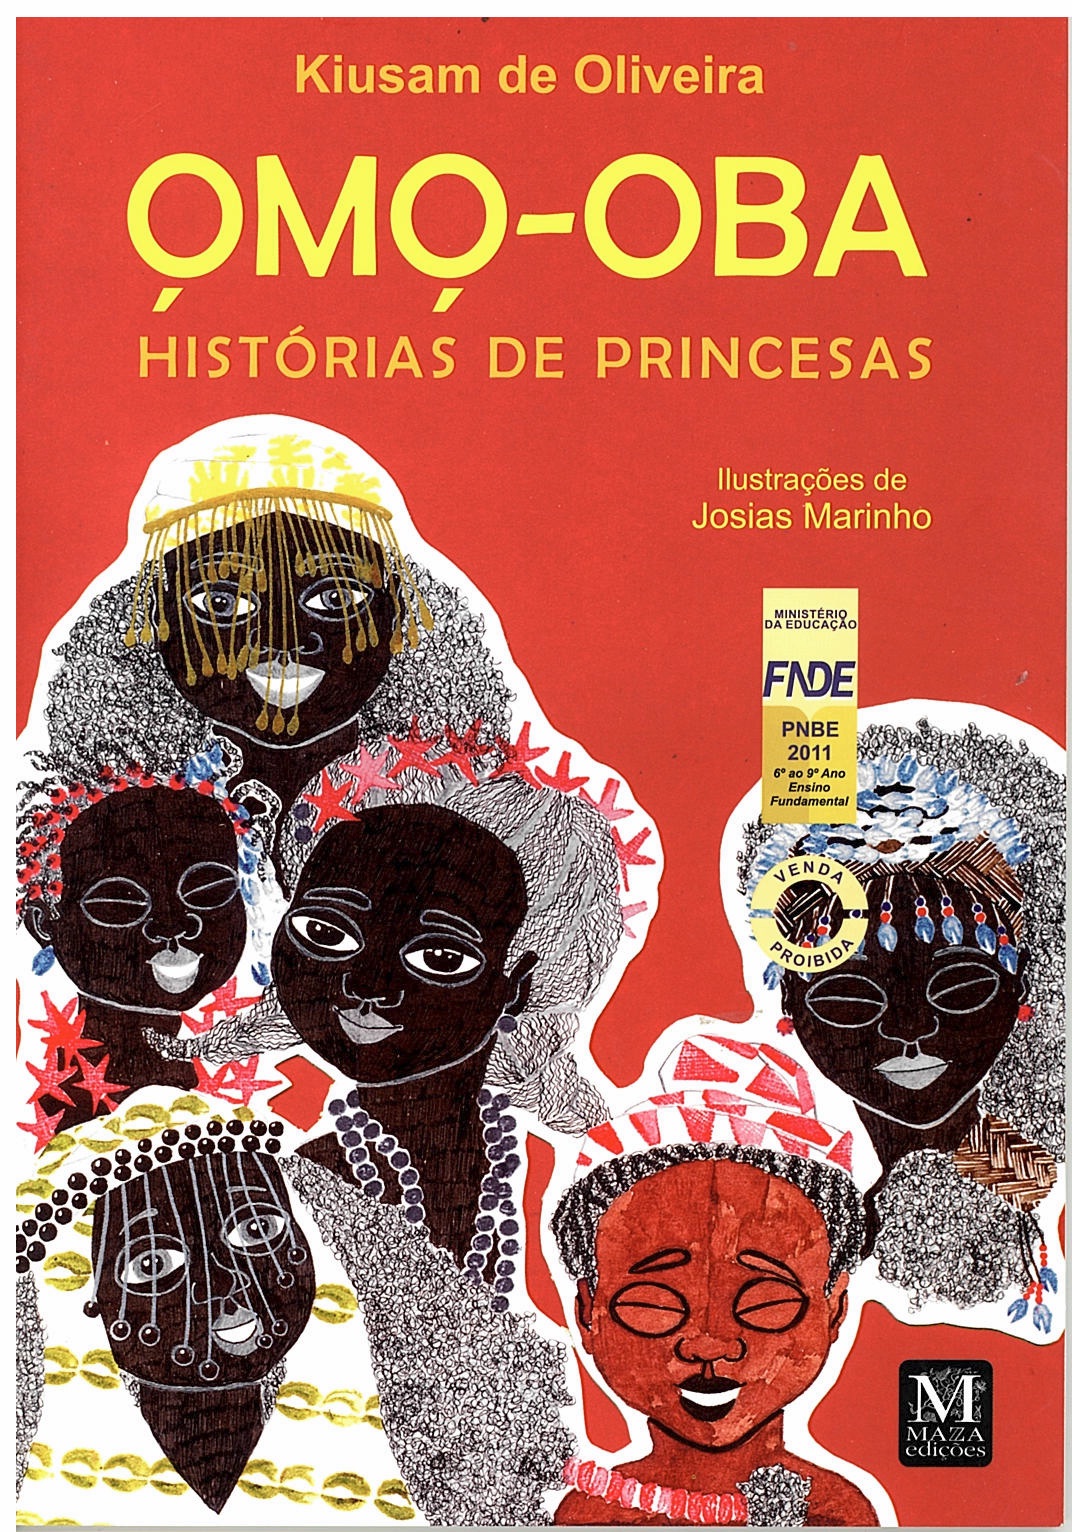 Livro "Omo-Oba: Histórias de Princesas". Foto: divulgação.